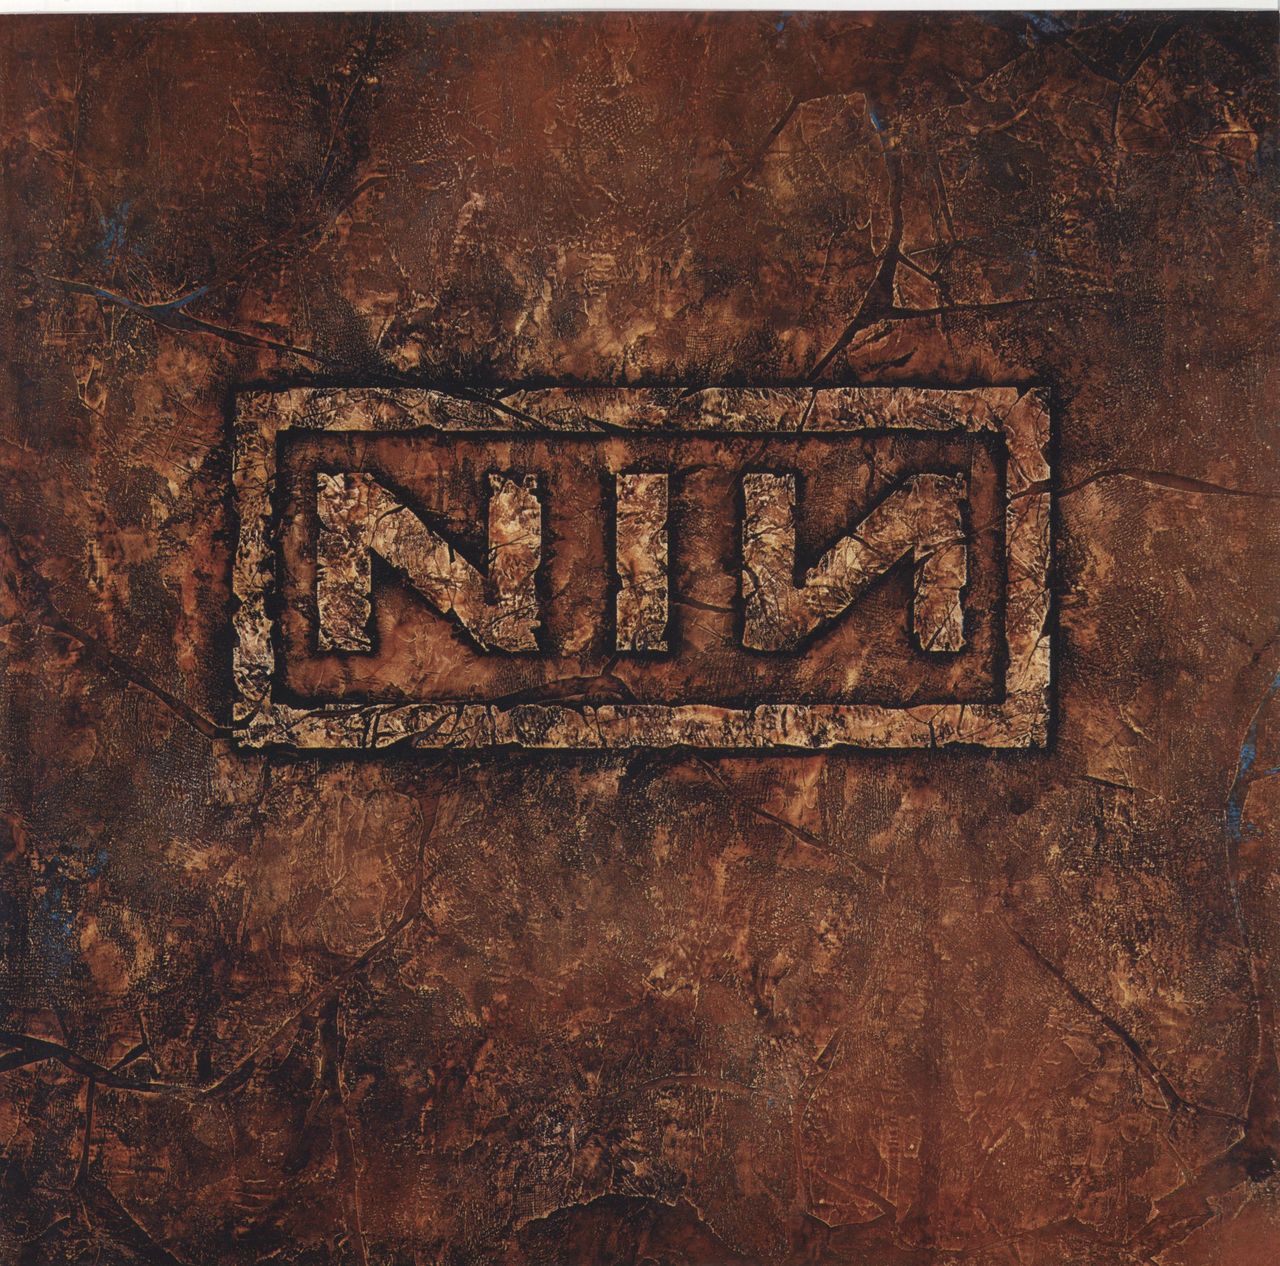 Nine Inch Nails The Downward Spiral - 180 Gram Vinyl US 2-LP vinyl set